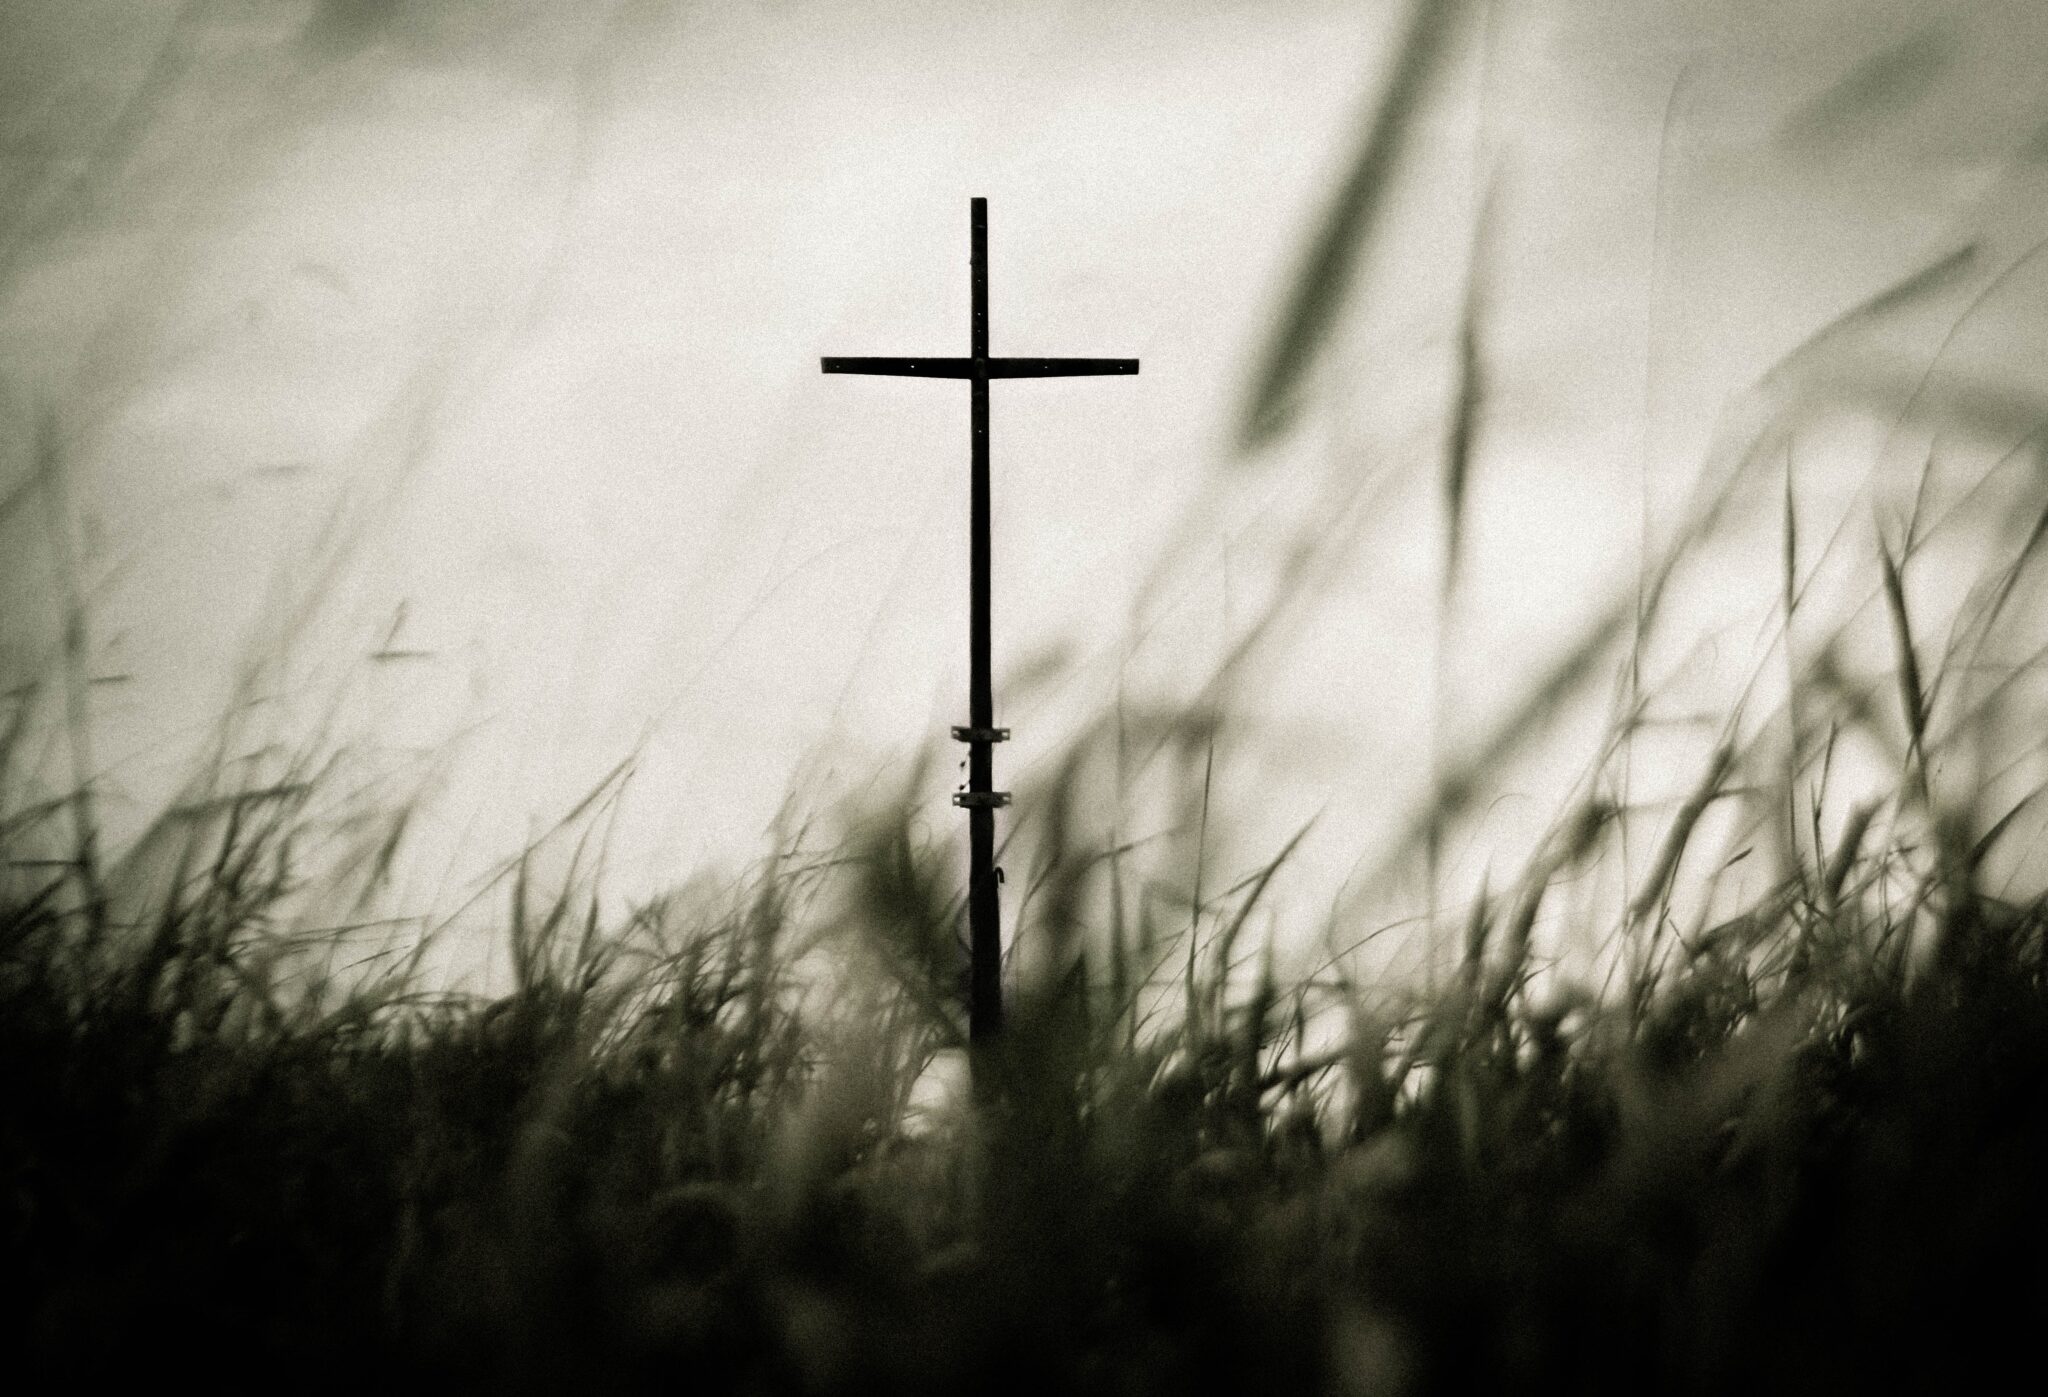 A cross in a field